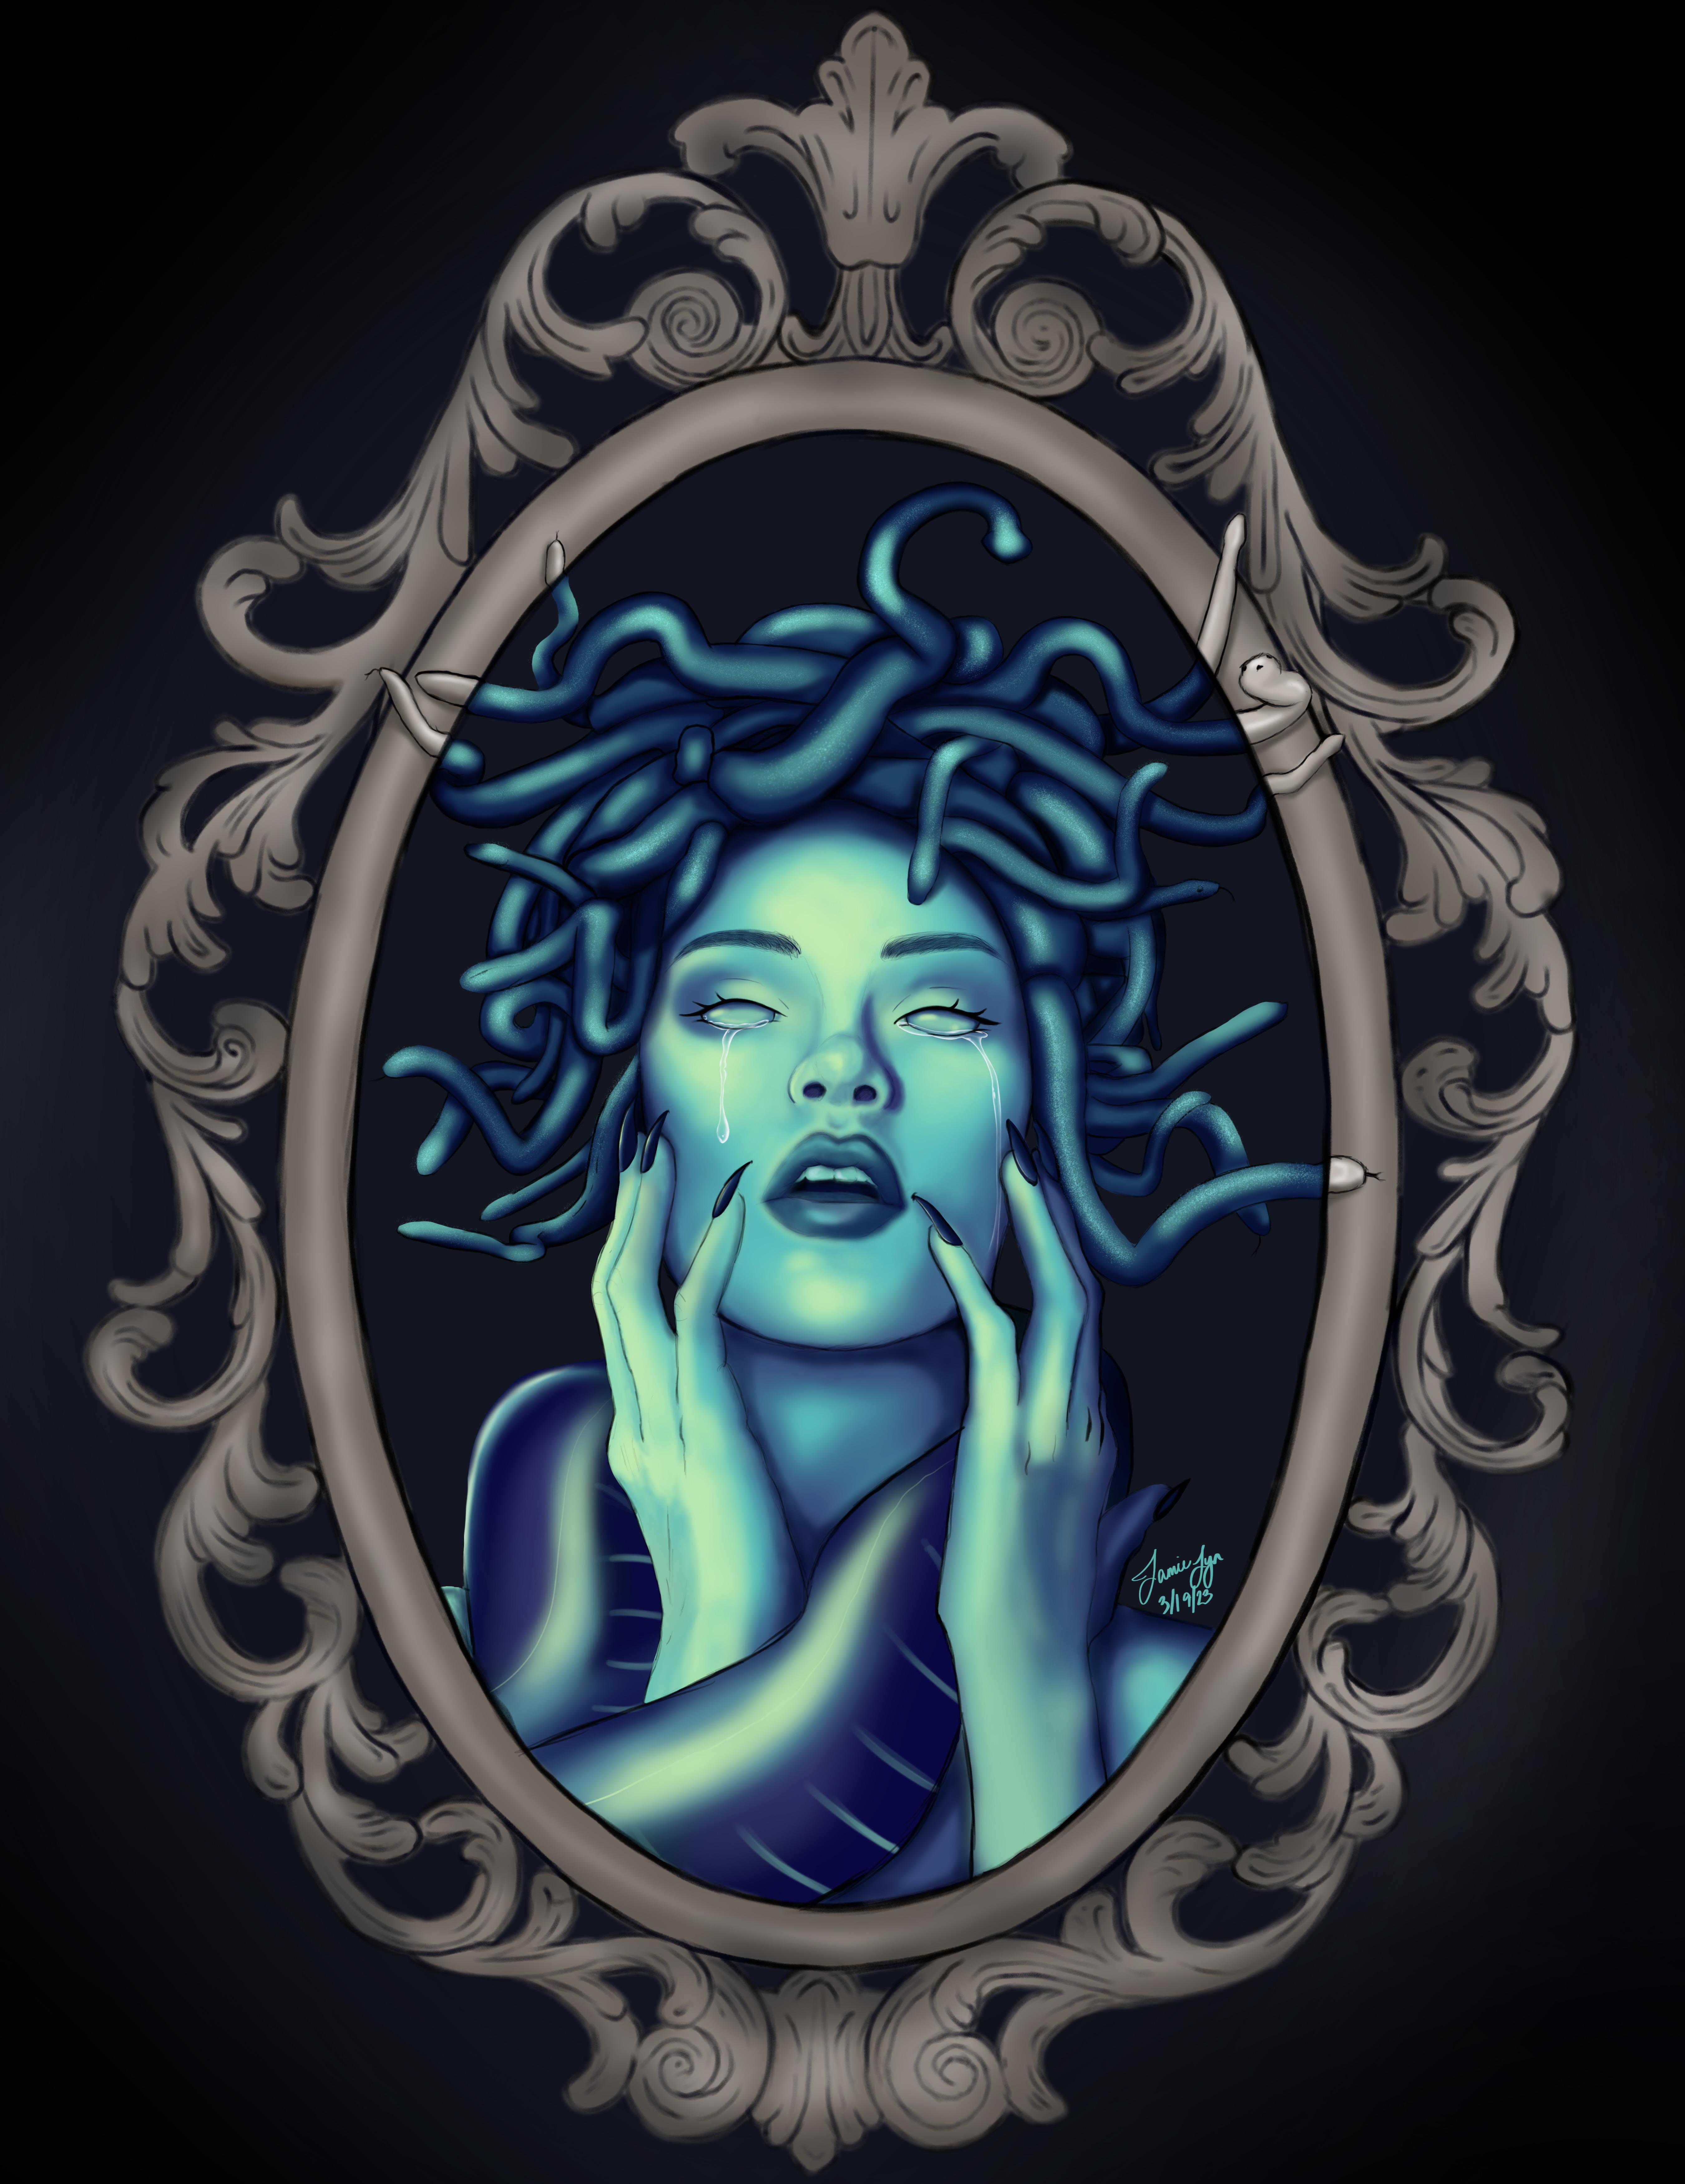 Mirrored Medusa” made on procreate : r